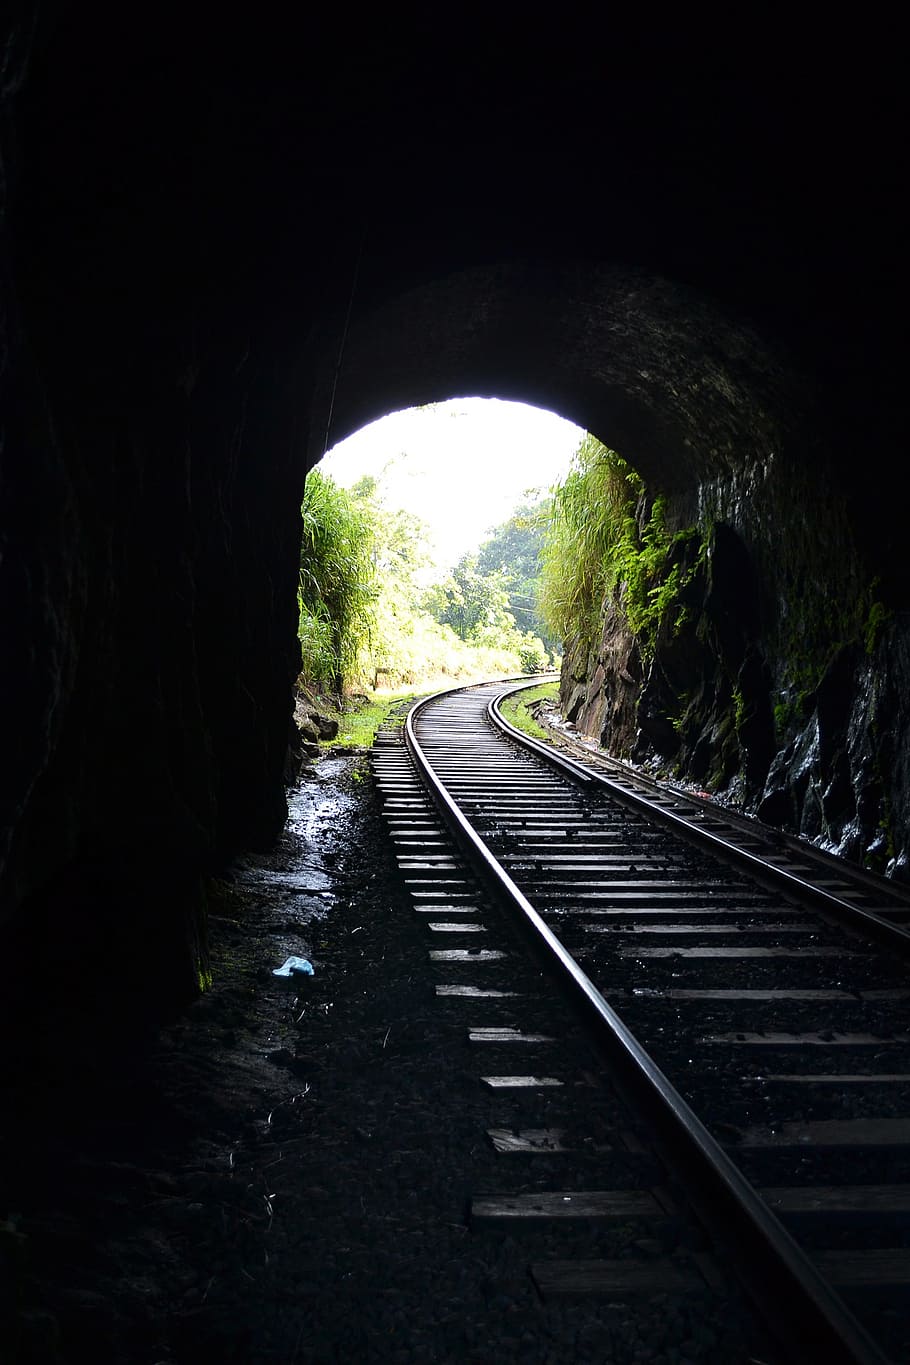 kereta api kereta api, terowongan, kereta api, cahaya, cahaya datang, matahari terbenam, transportasi, gelap, kelelawar, menyeramkan